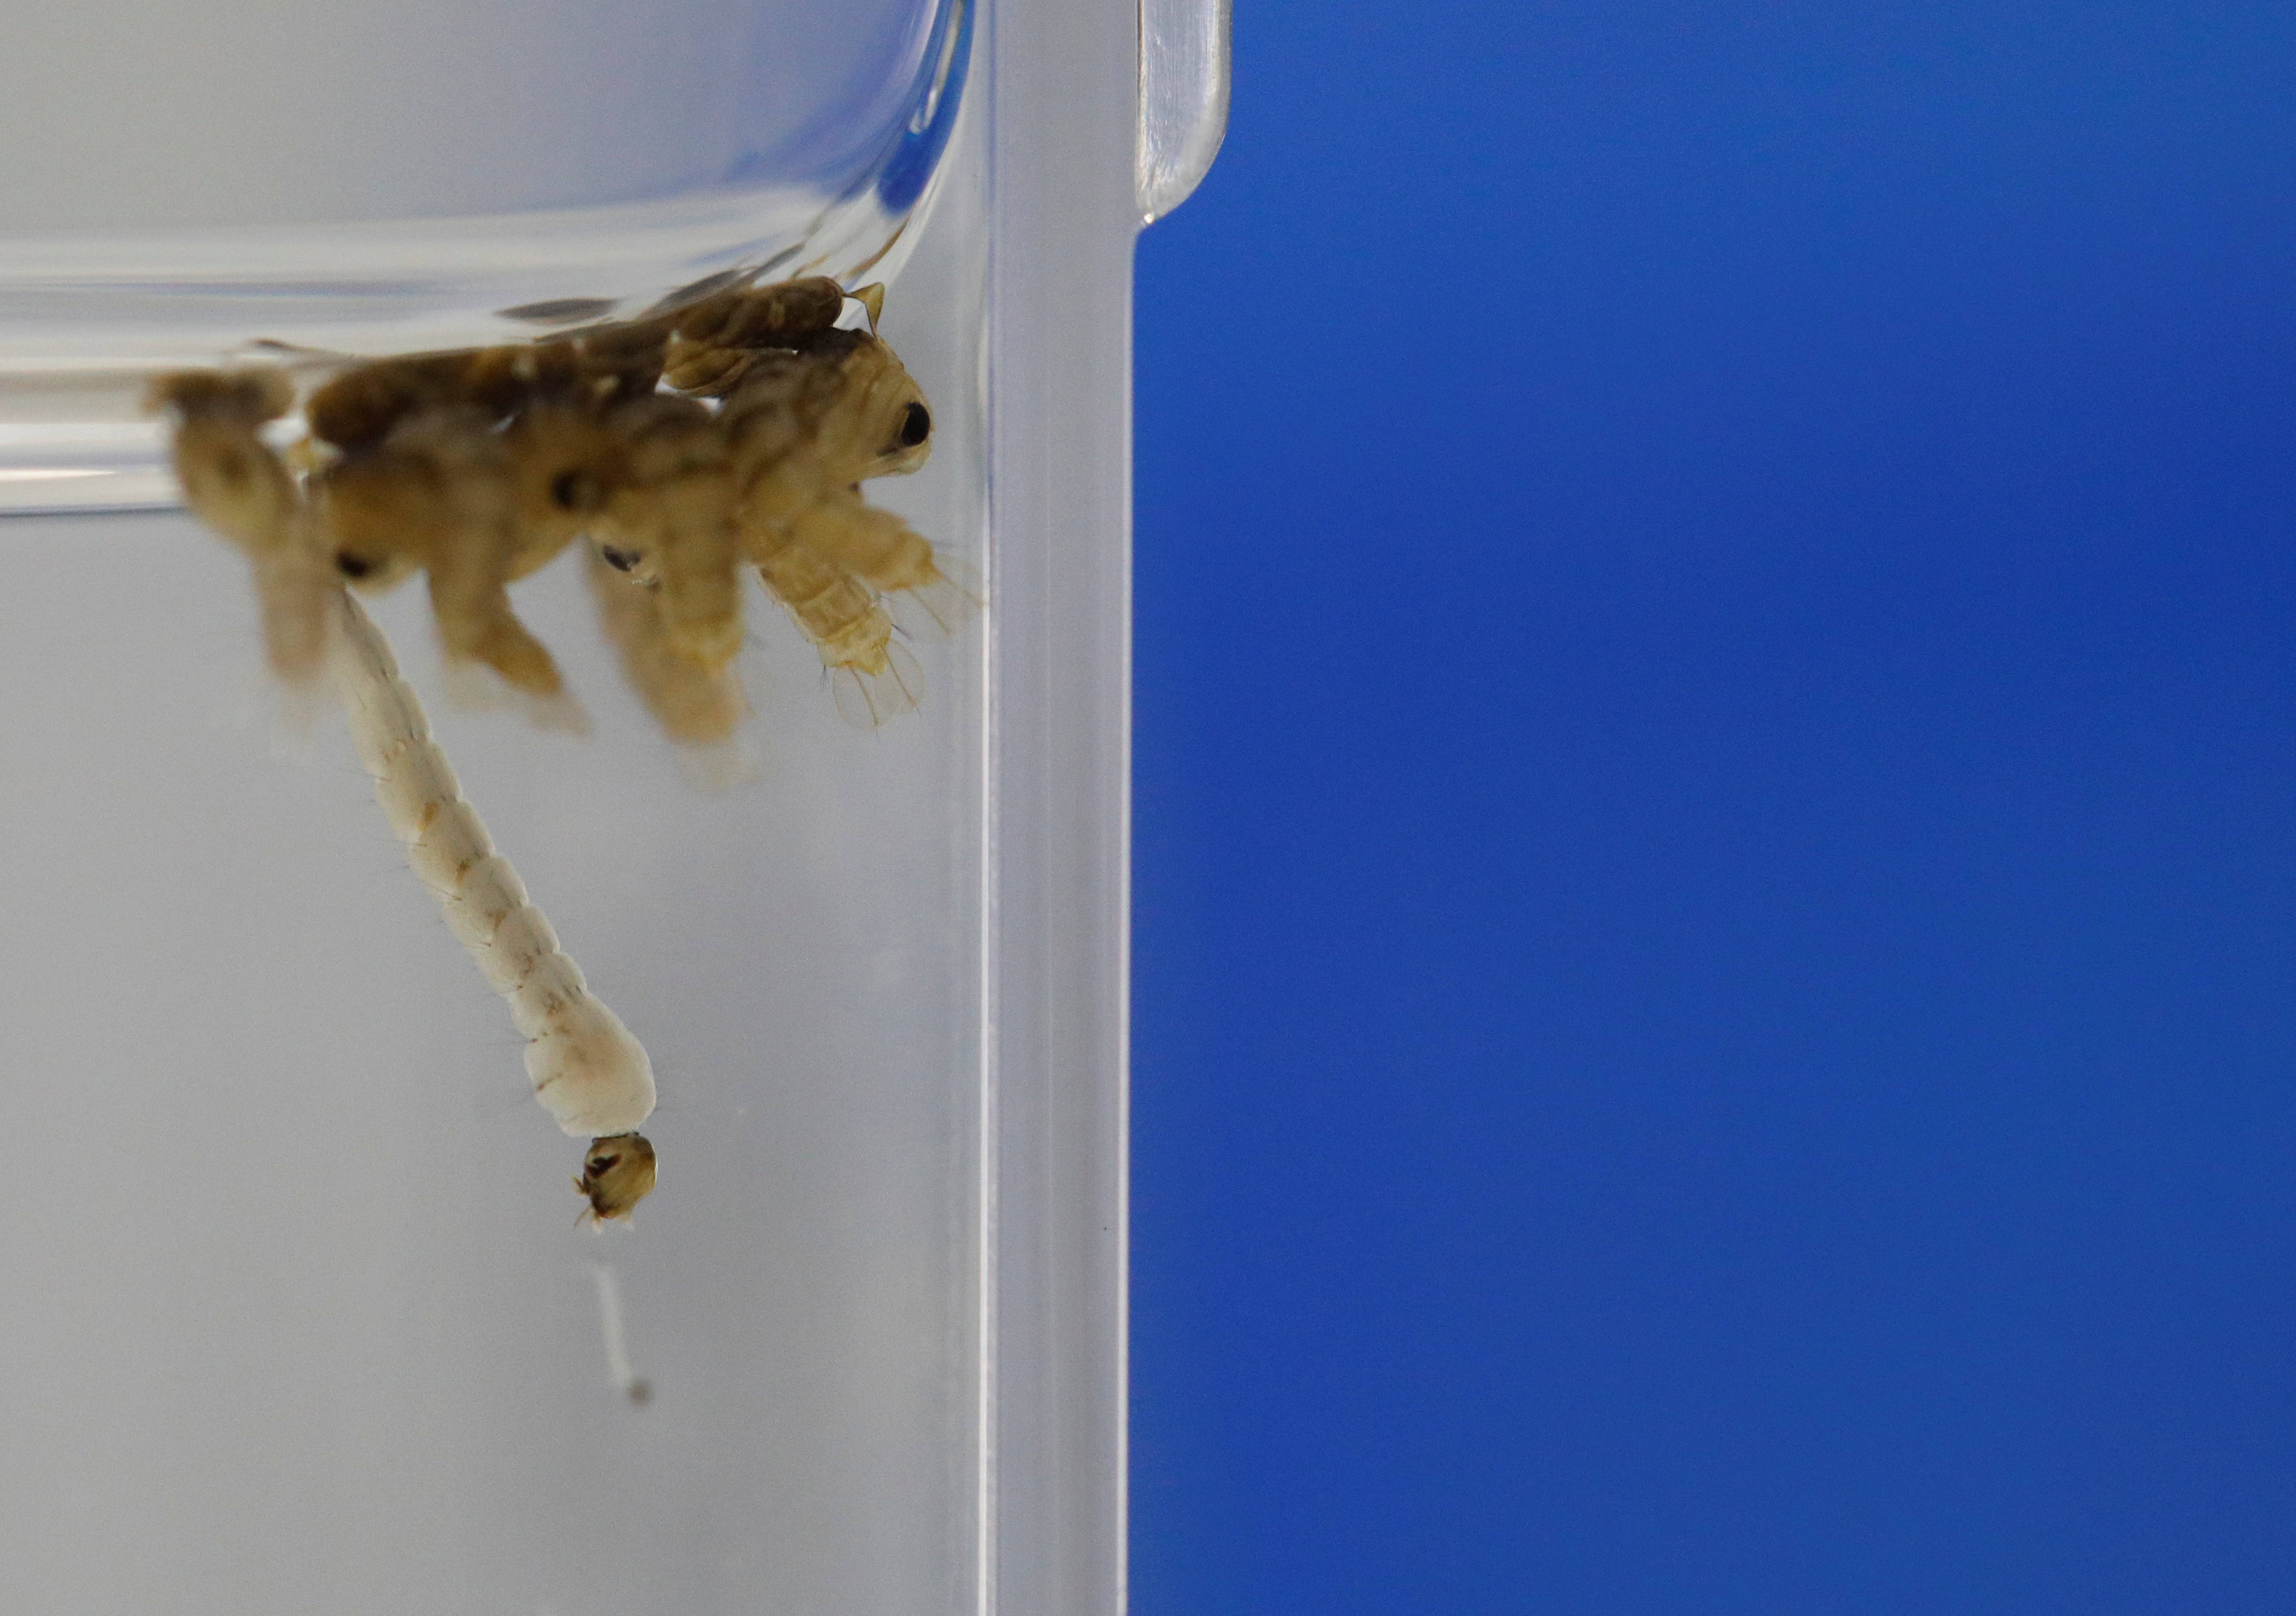 Larvas de aedes aegypti: dependiendo de la temperatura del lugar, luego de un tiempo los huevos harán eclosión y permanecerán en el agua en estado larvario por una semana, aproximadamente
REUTERS/Edgar Su